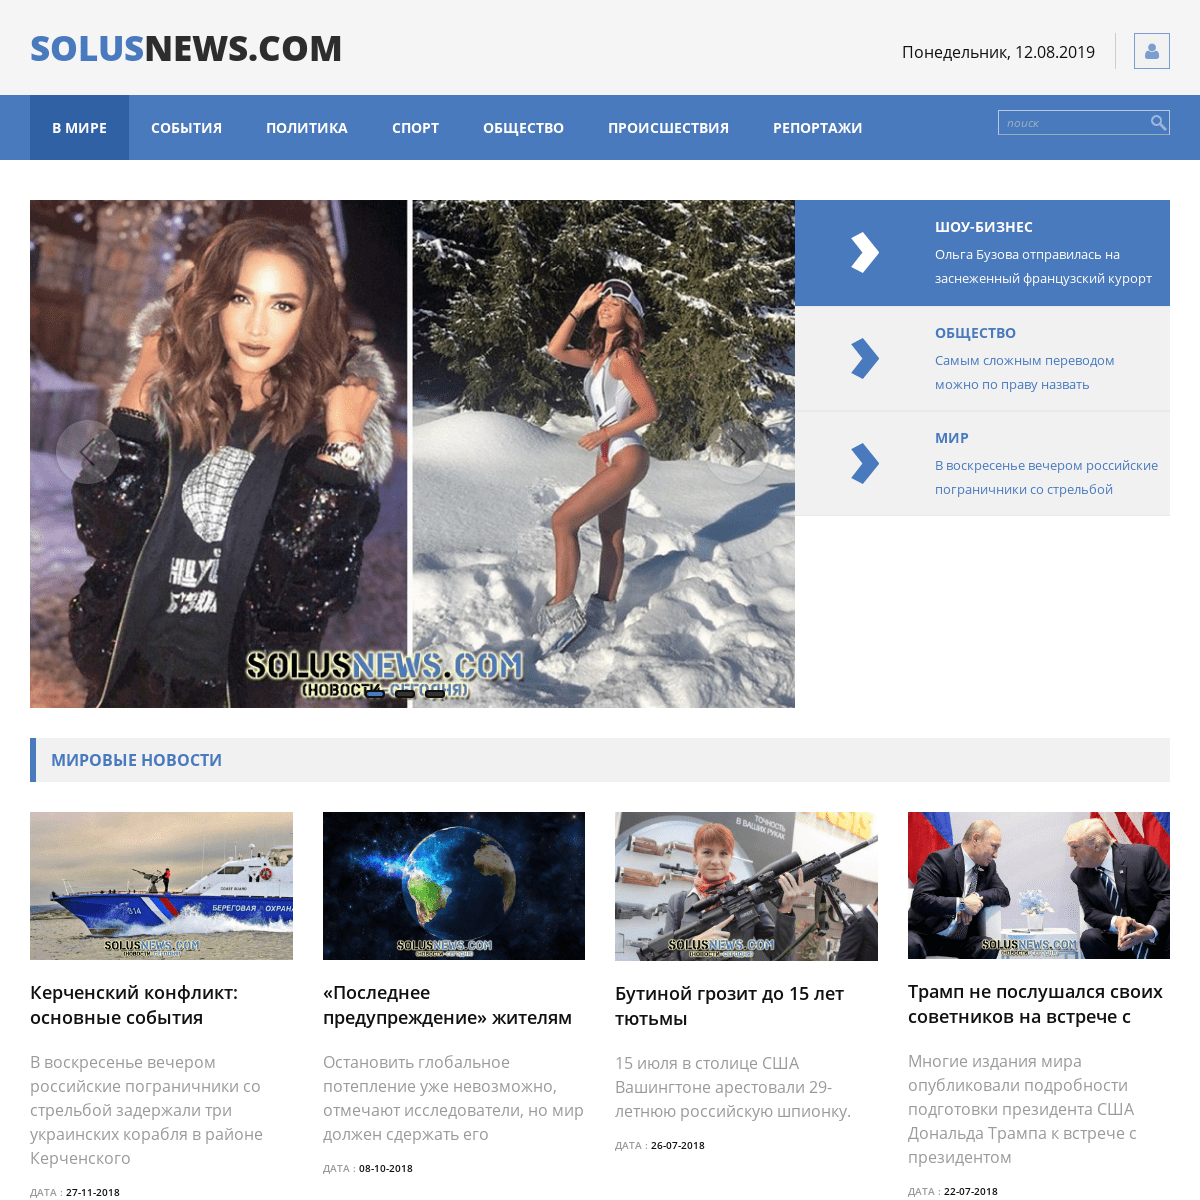 SolusNews.com